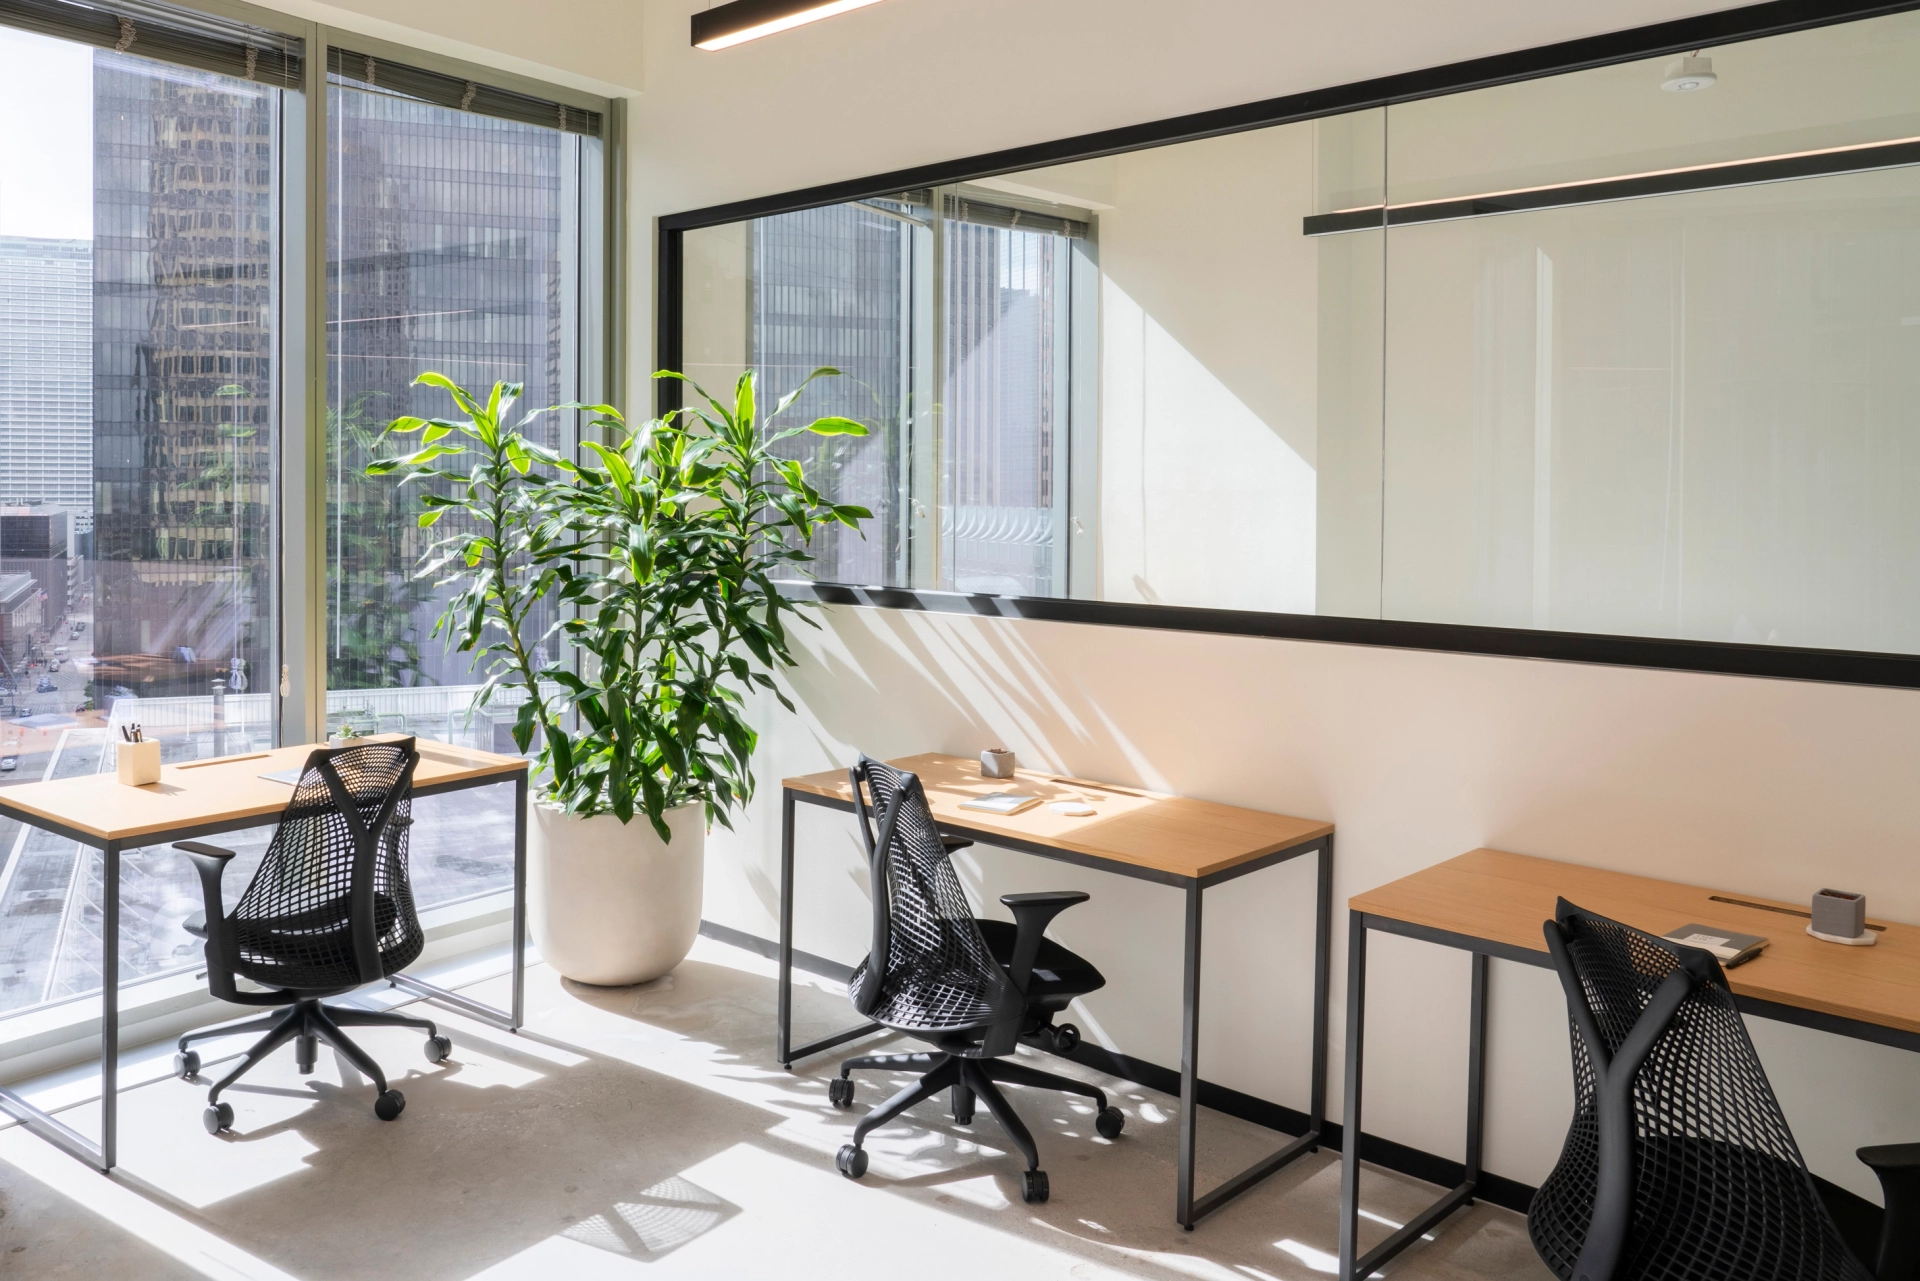 Une salle de réunion de coworking à Seattle avec deux bureaux, des chaises et une plante.